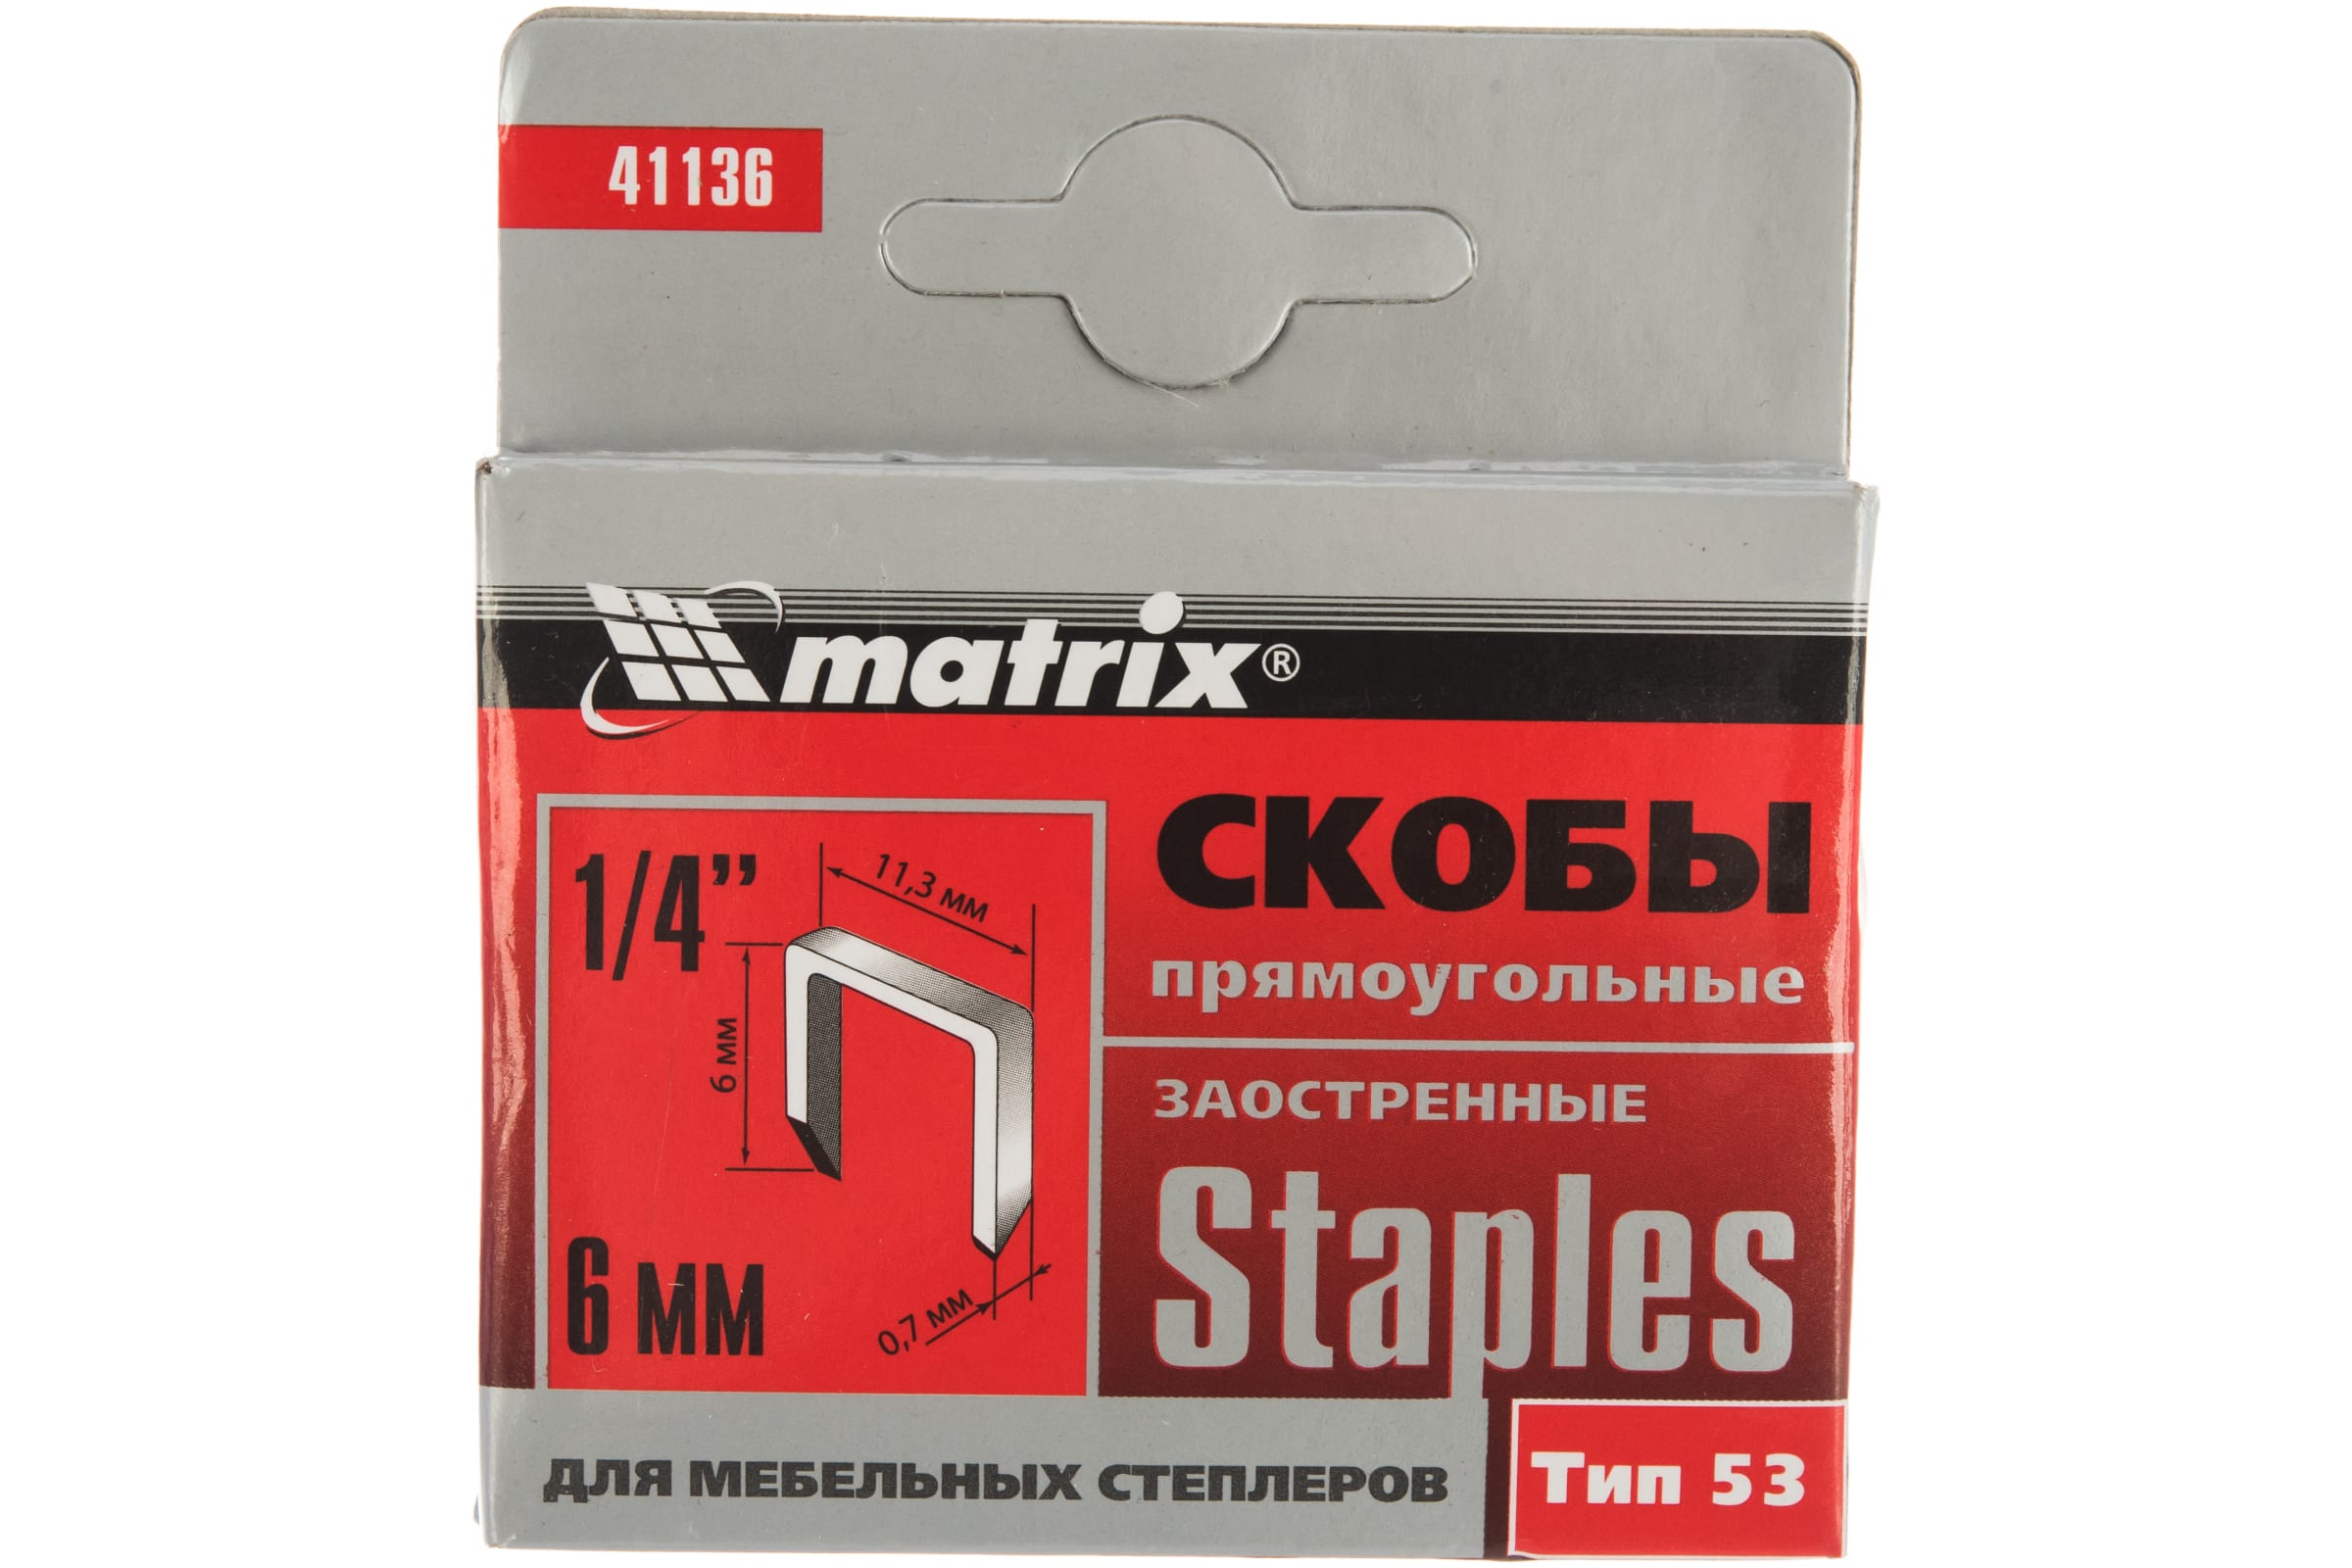 Скобы для электростеплера MATRIX 41136 скобы для электростеплера matrix 41410